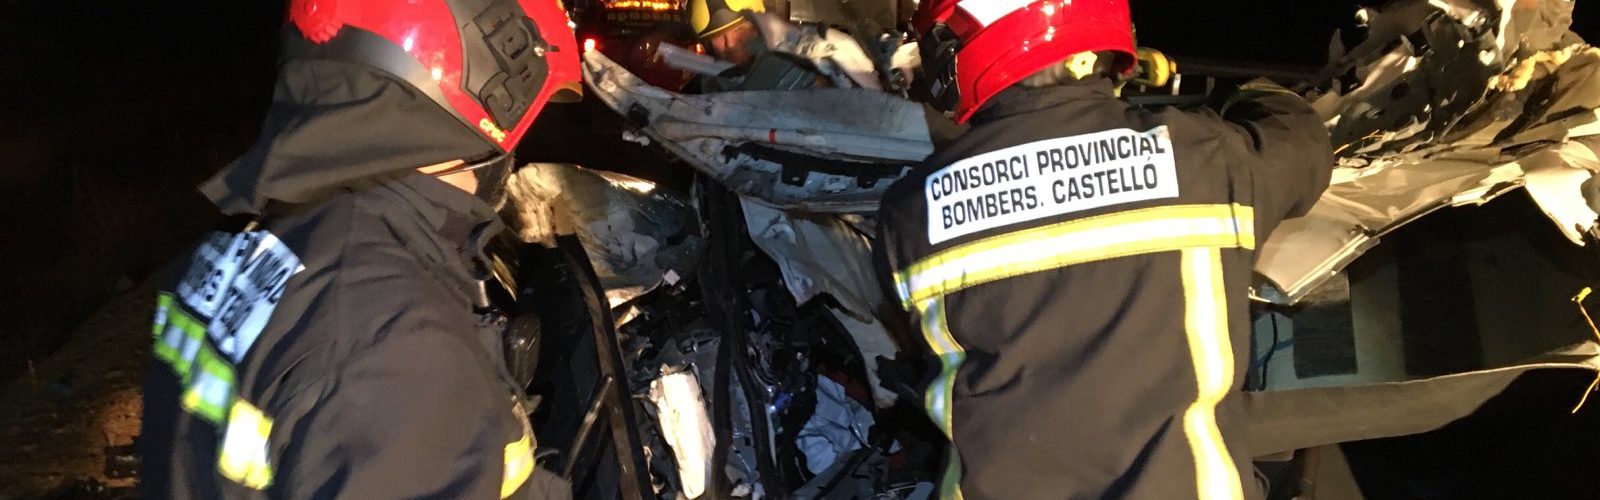 Dos fallecidos y tres heridos en un accidente en la N-340, en Vinaròs